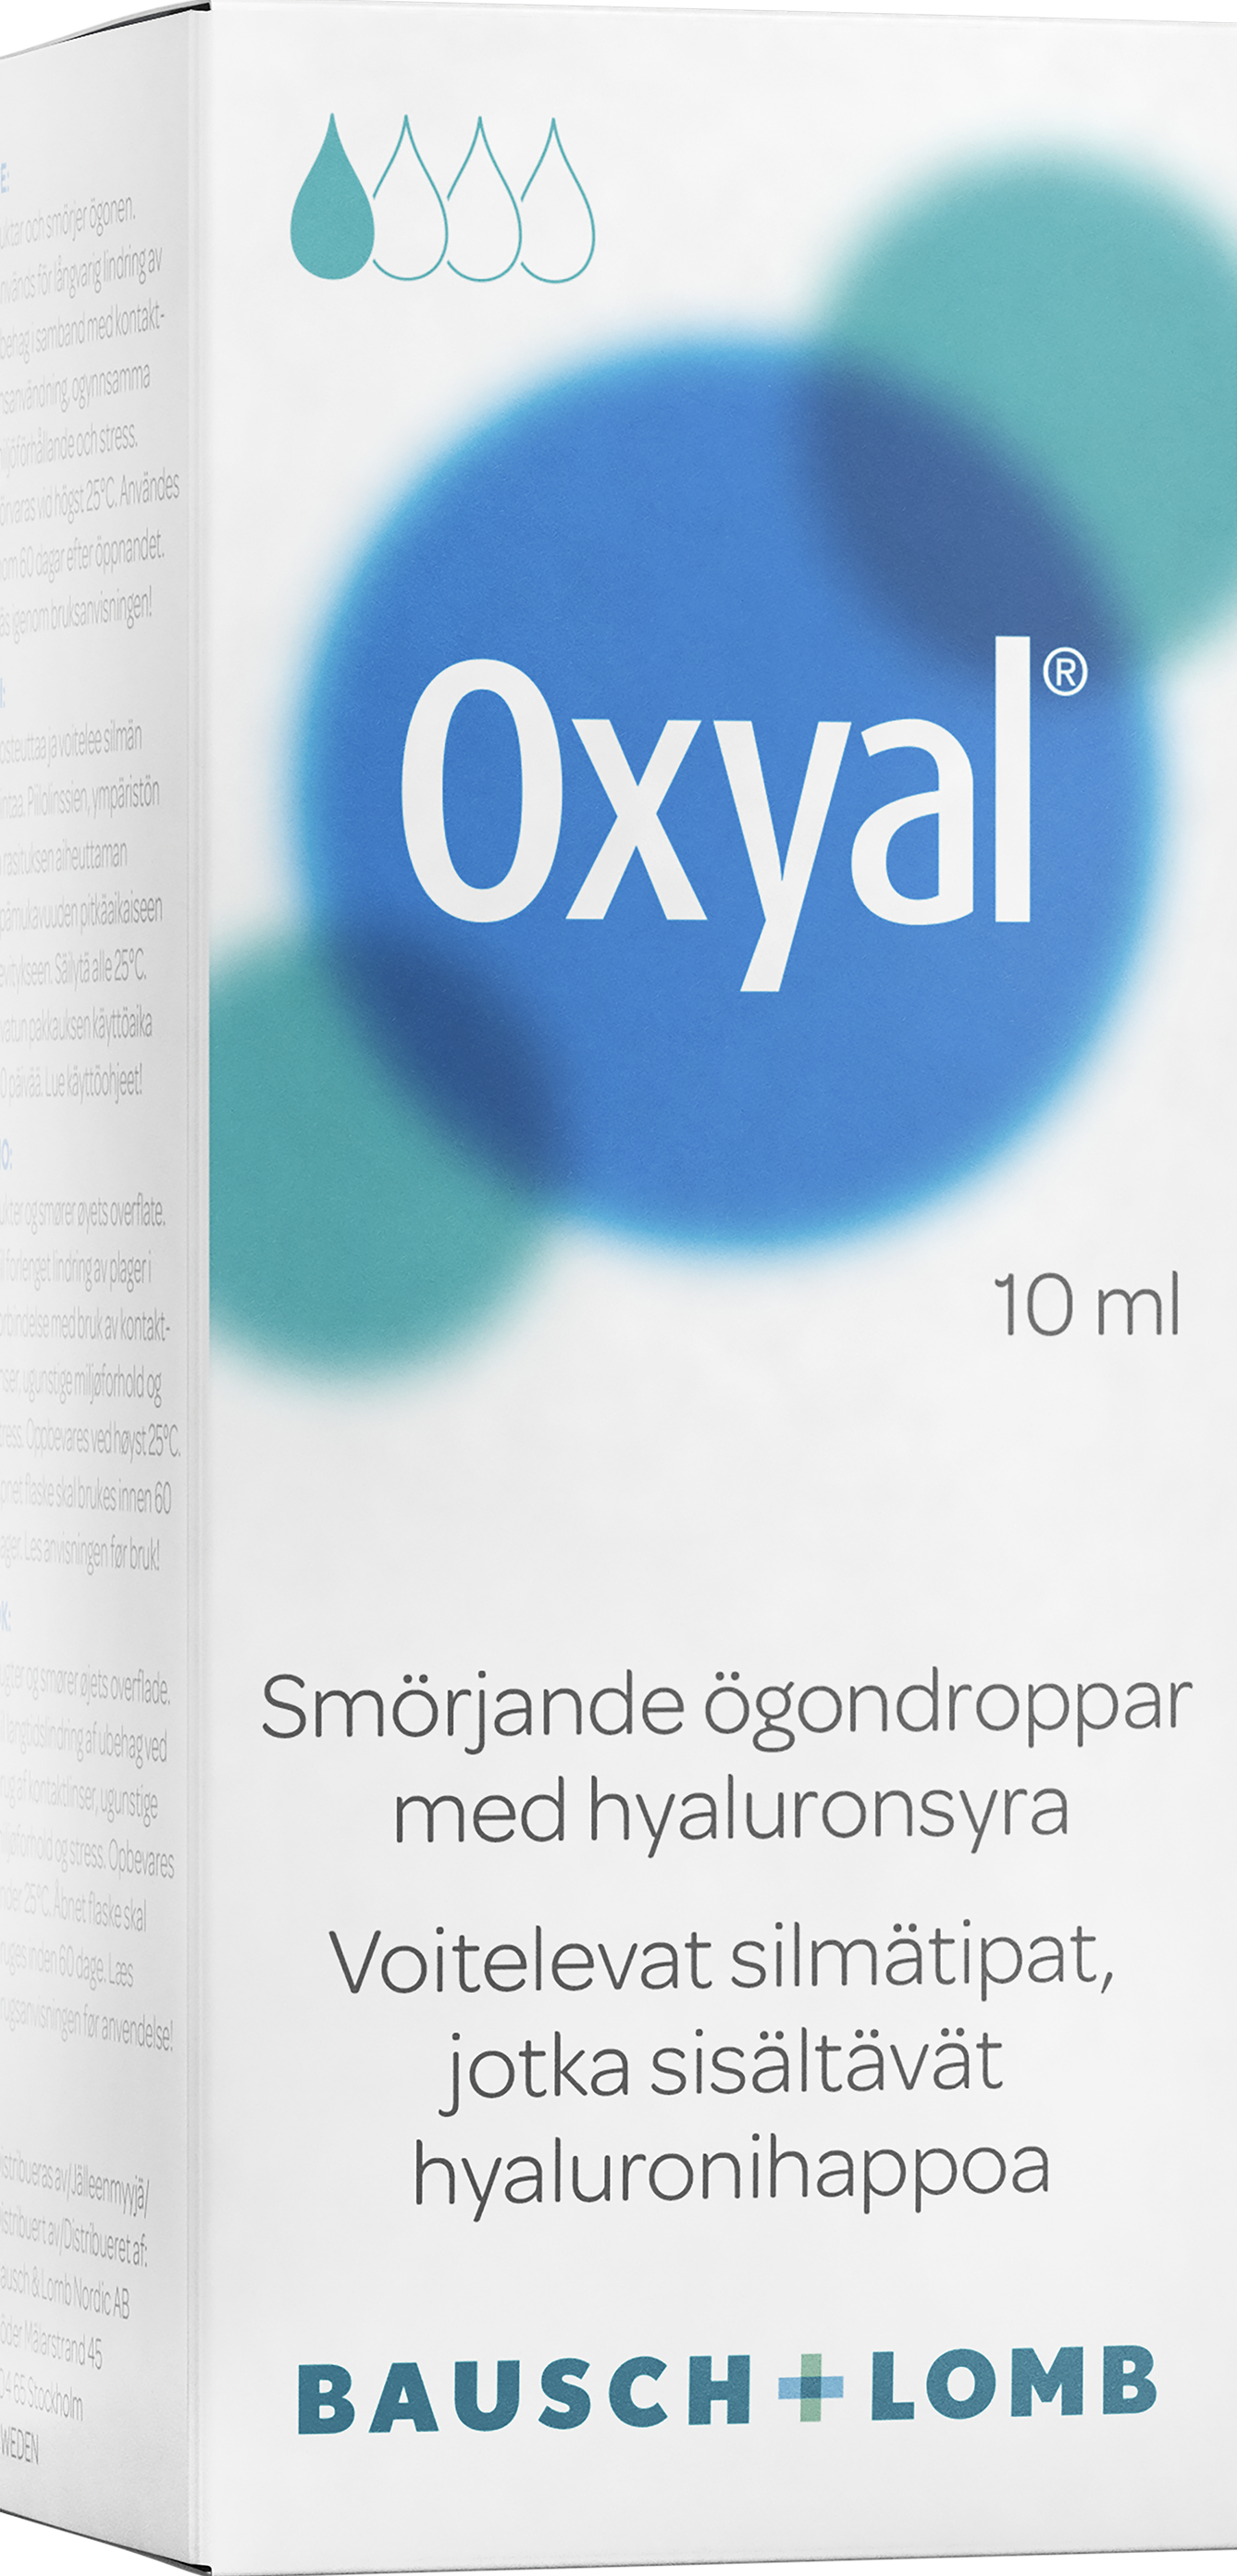 Oxyal Tårsubstitut 10ml